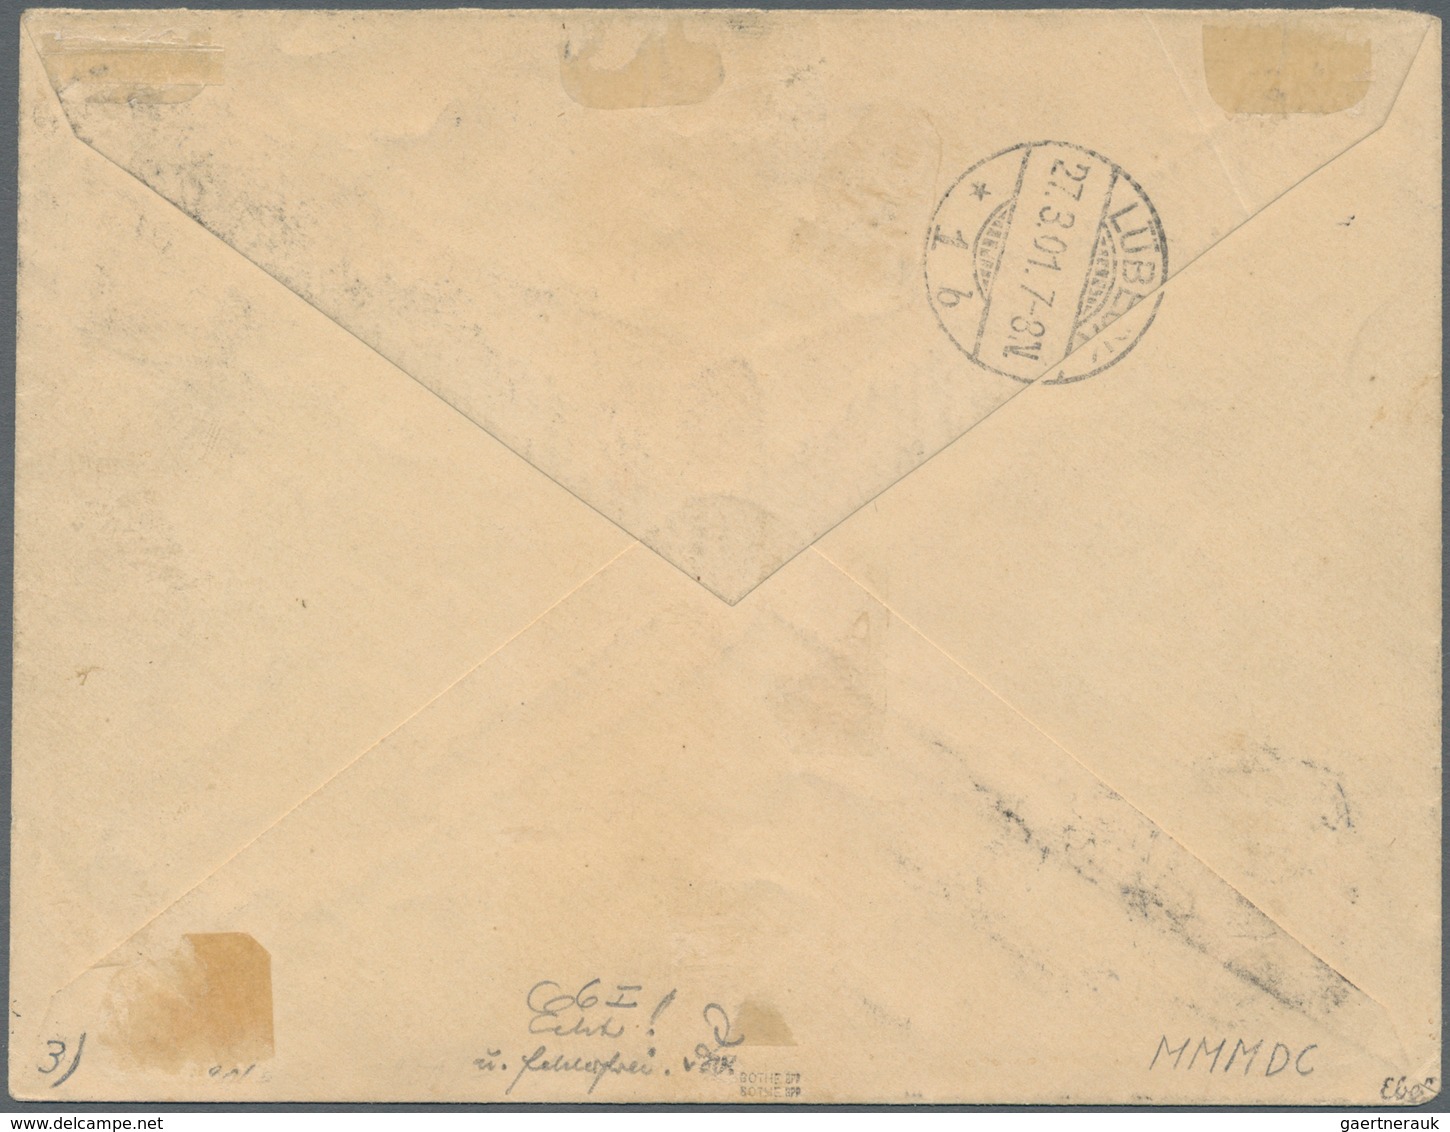 Deutsche Kolonien - Karolinen: 1899, 50 Pf Lebhaftrötlichbraun Mit Diagonalem Aufdruck, Einzelfranka - Isole Caroline